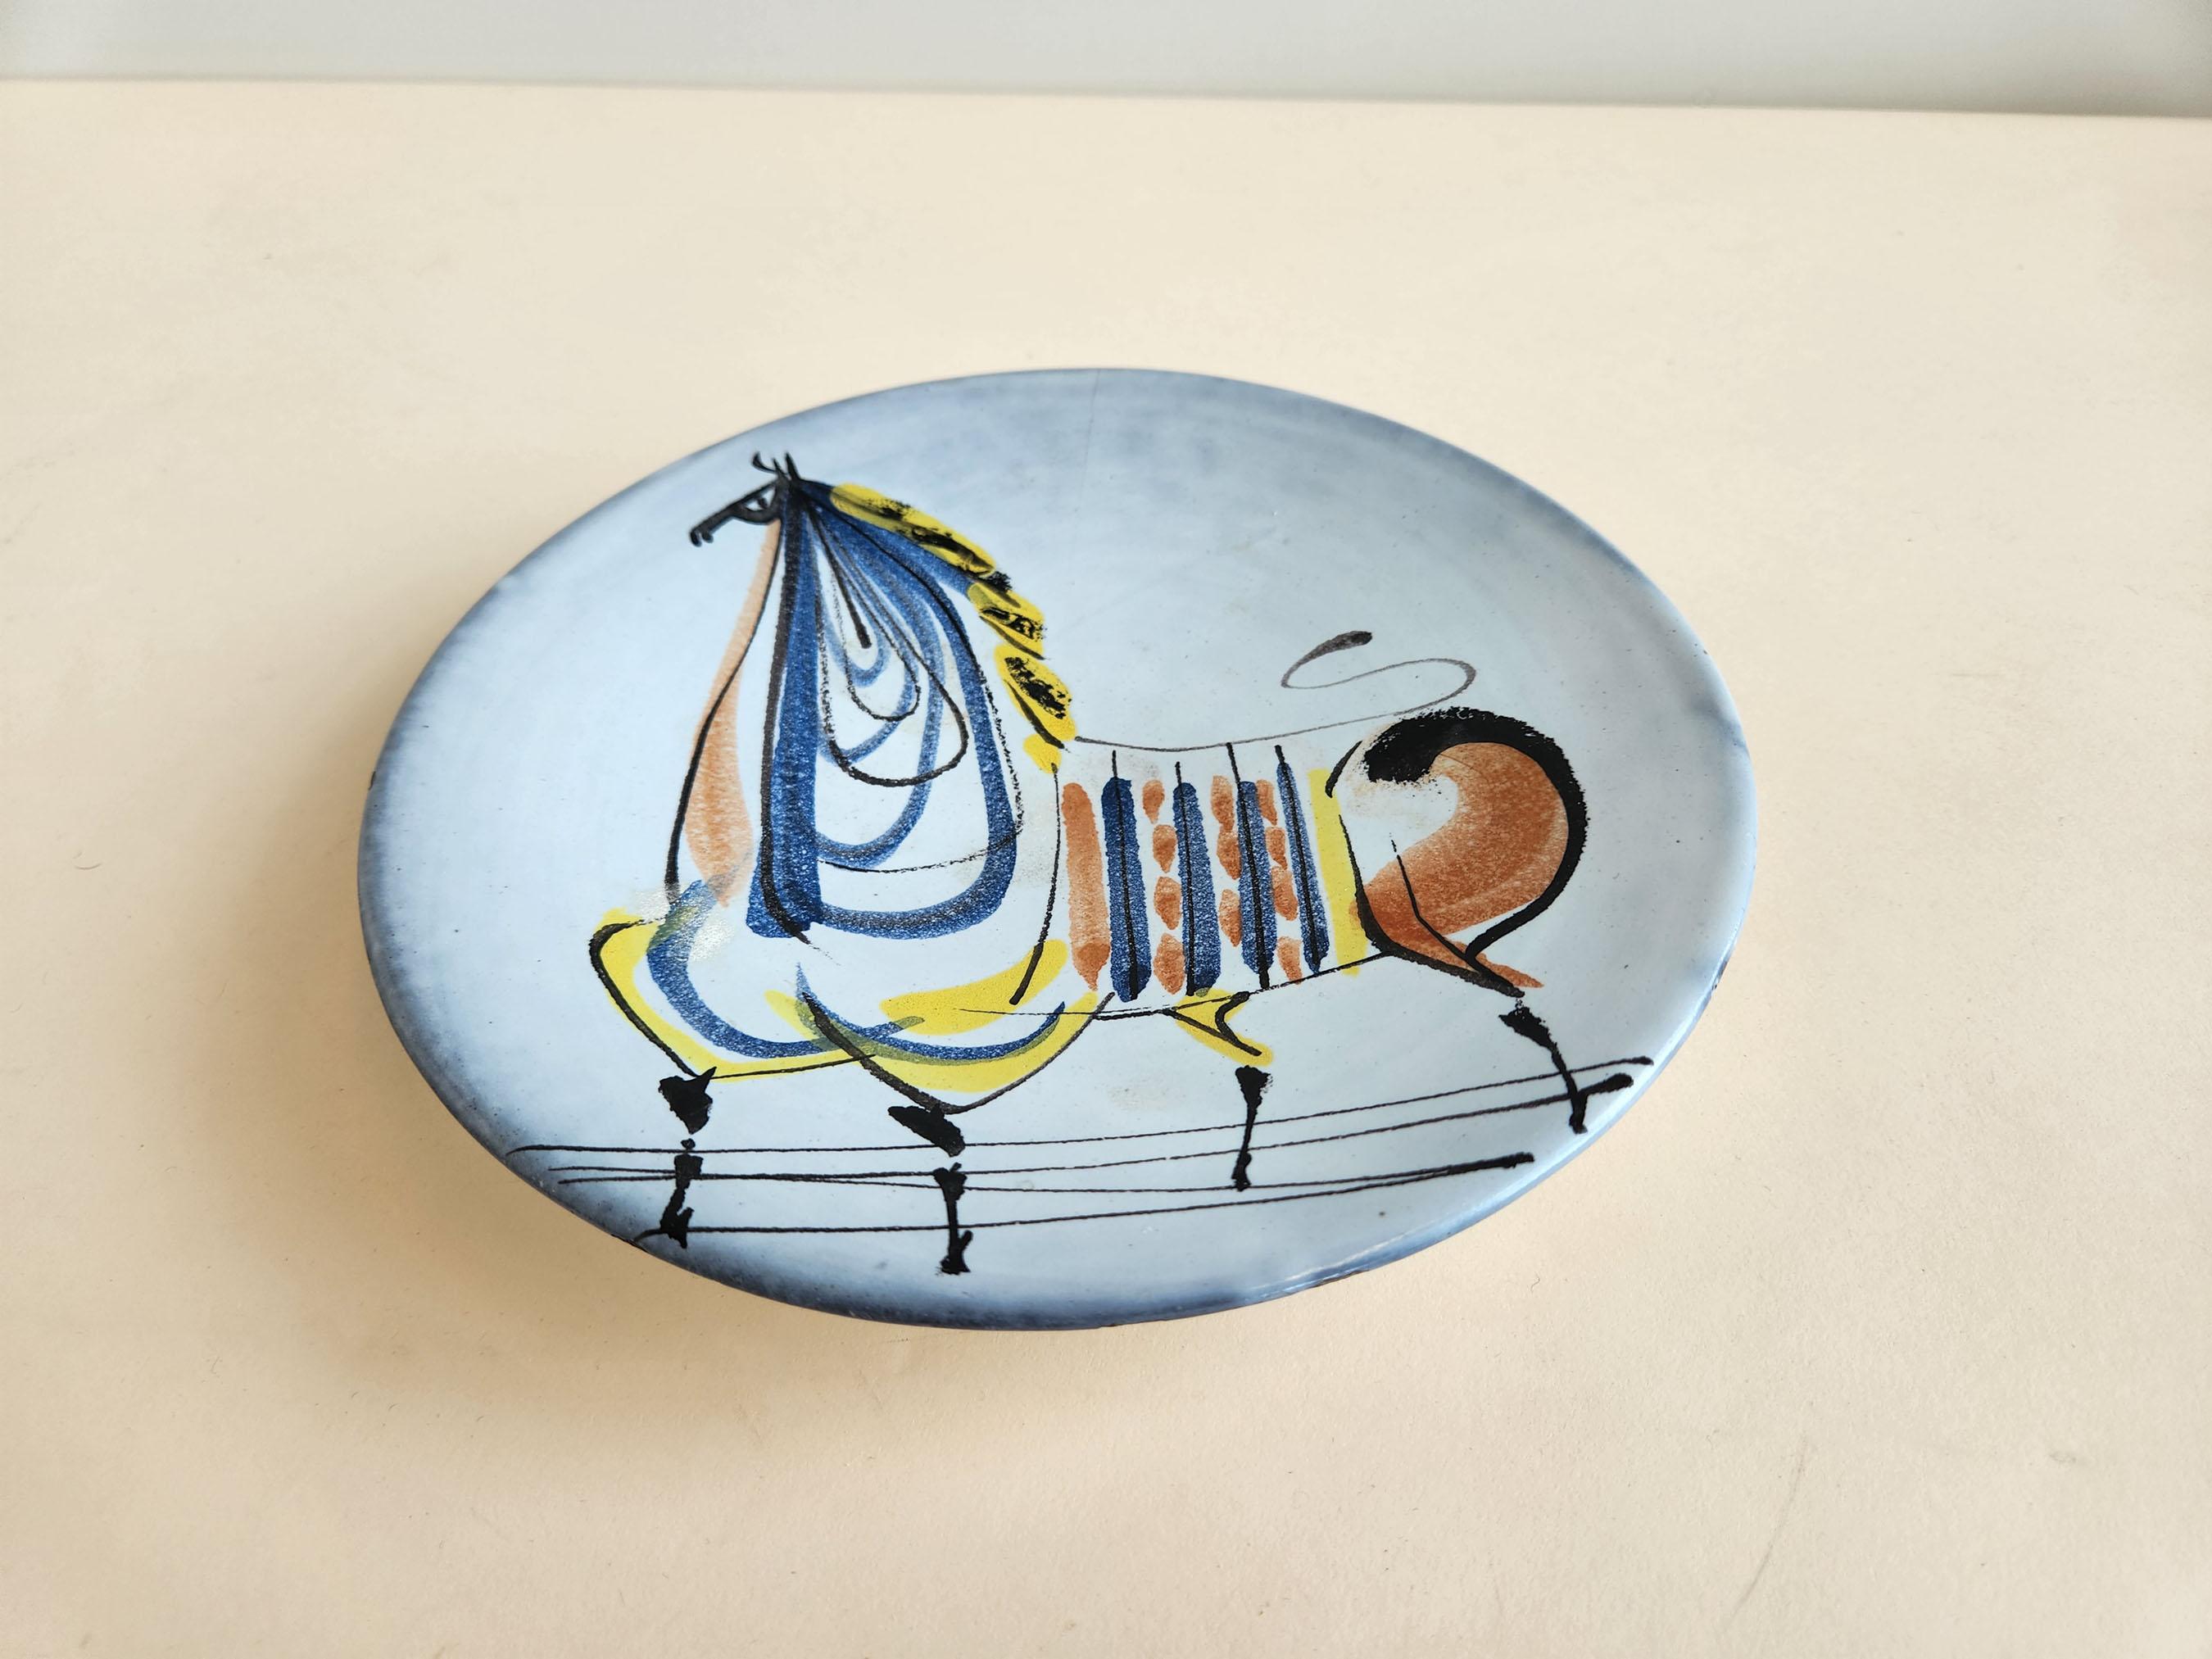 Vintage Keramikteller mit Pferd von Roger Capron  -  Vallauris, Frankreich

Roger Capron war ein einflussreicher französischer Keramiker, der für seine gekachelten Tische und die Verwendung wiederkehrender Motive wie stilisierte Zweige und